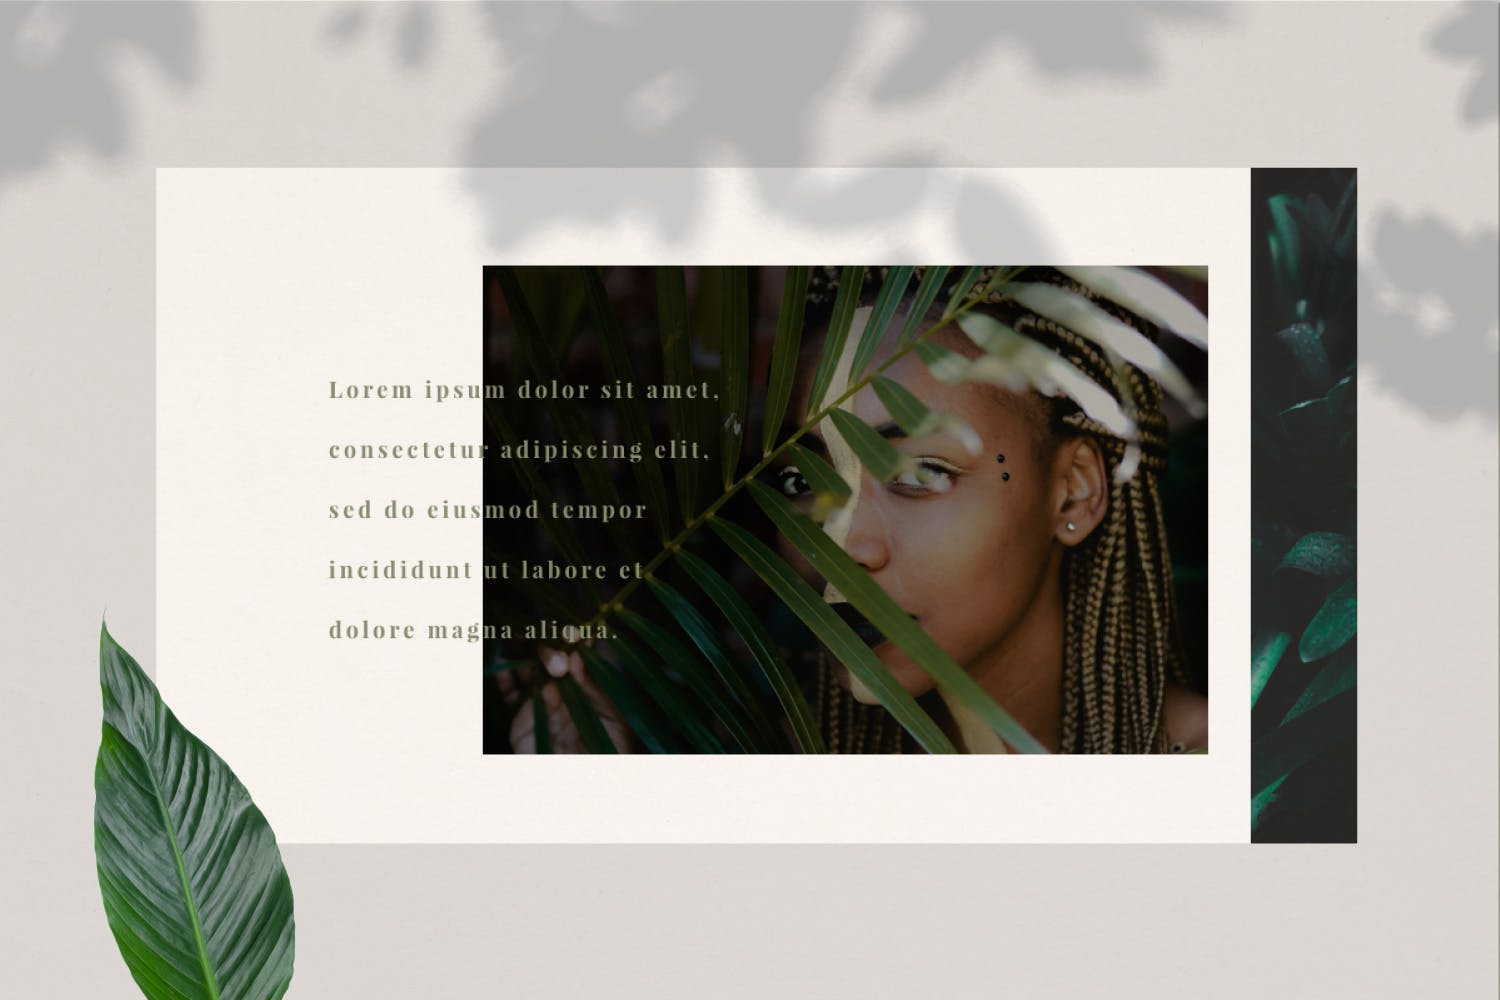 时尚潮流高端品牌主题PPT幻灯片模板下载Keiths Google Slide插图10